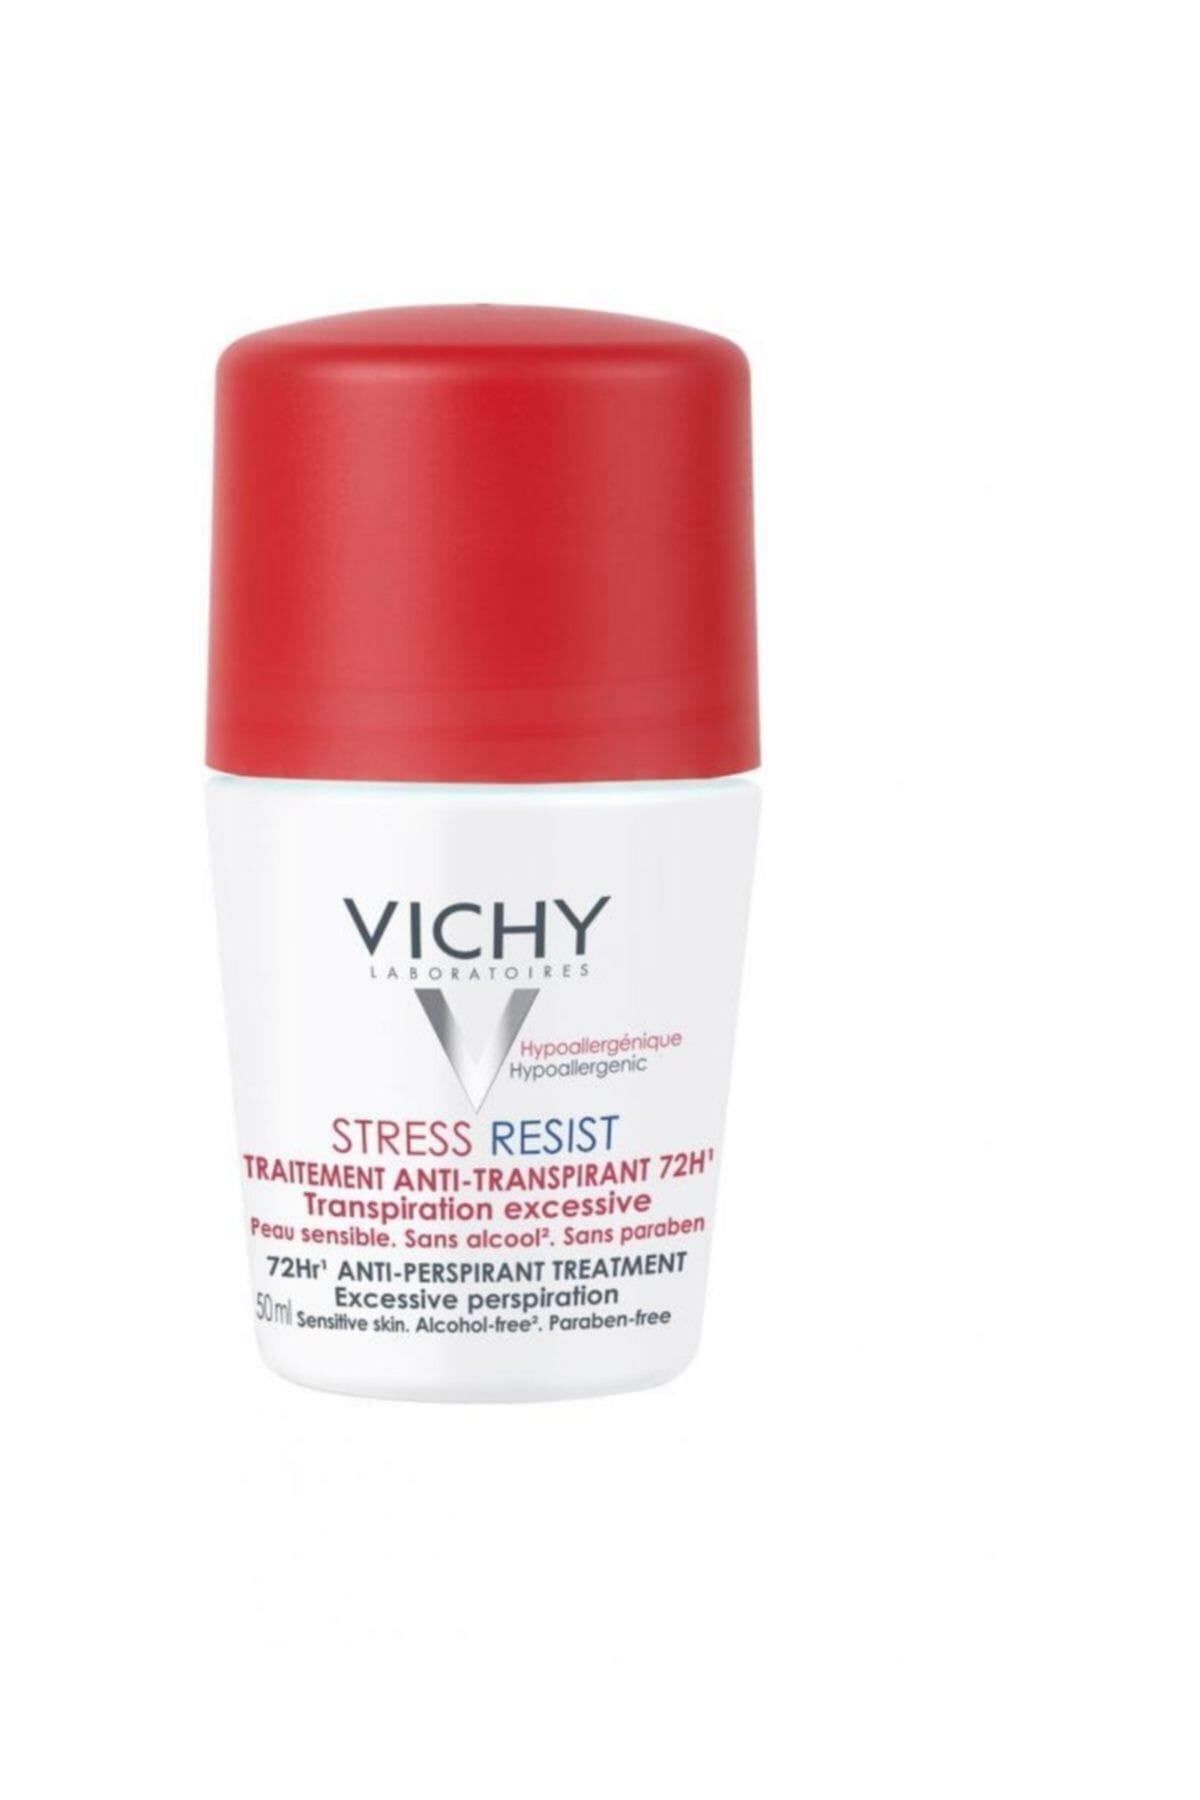 Vichy Stress Resist Terleme Karşıtı Deodorant Yoğun Kontrol - 72 Saat Etkinlik 50ml